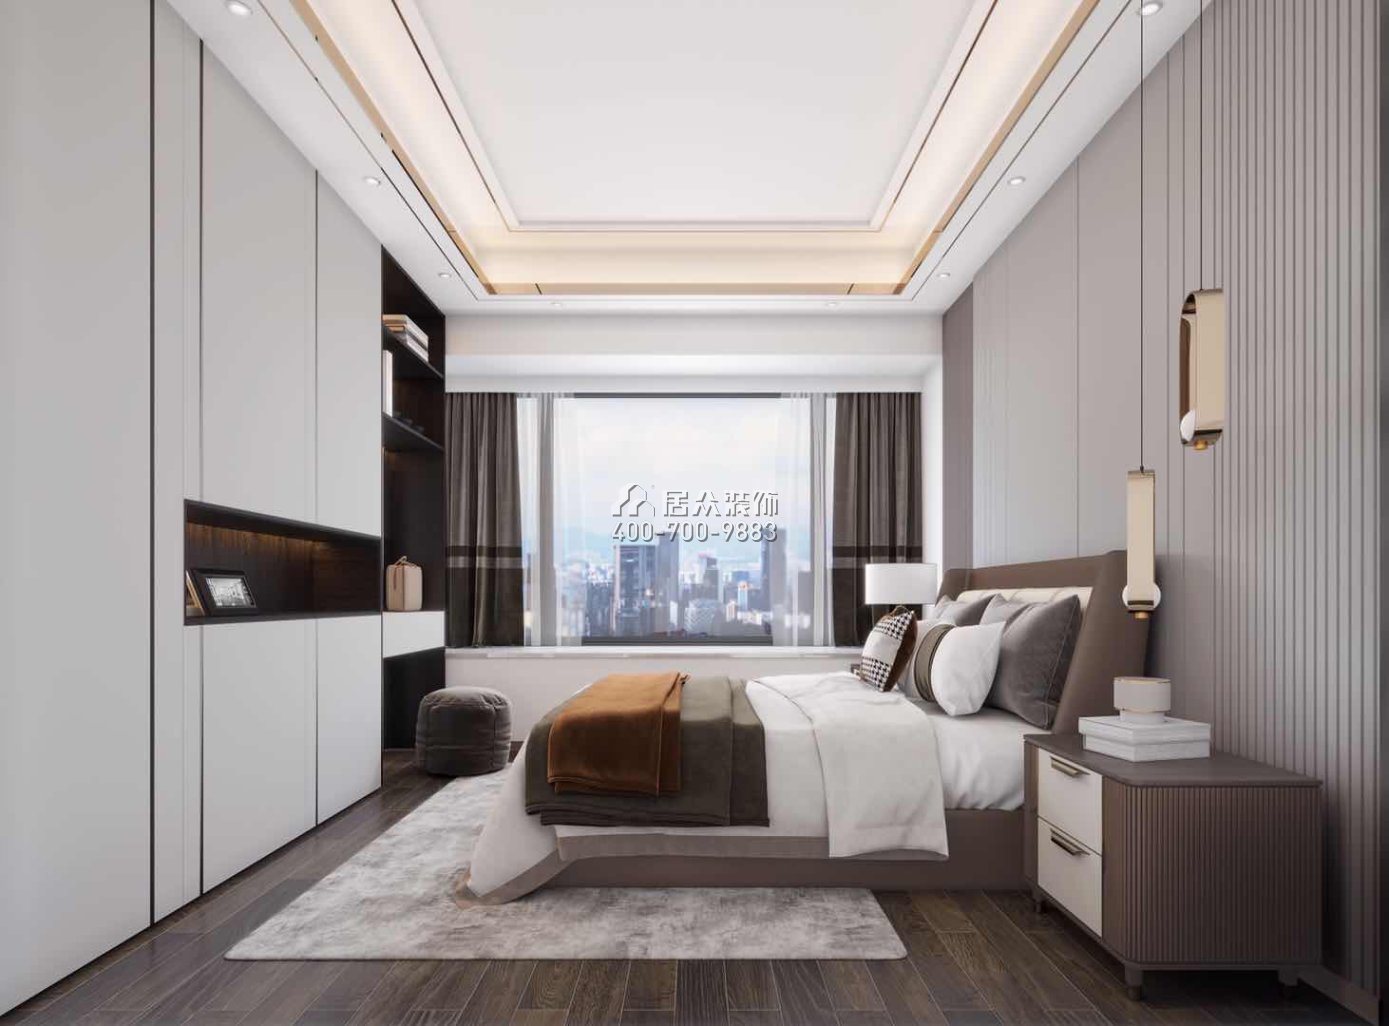 华发峰景湾134平方米现代简约风格平层户型卧室装修效果图